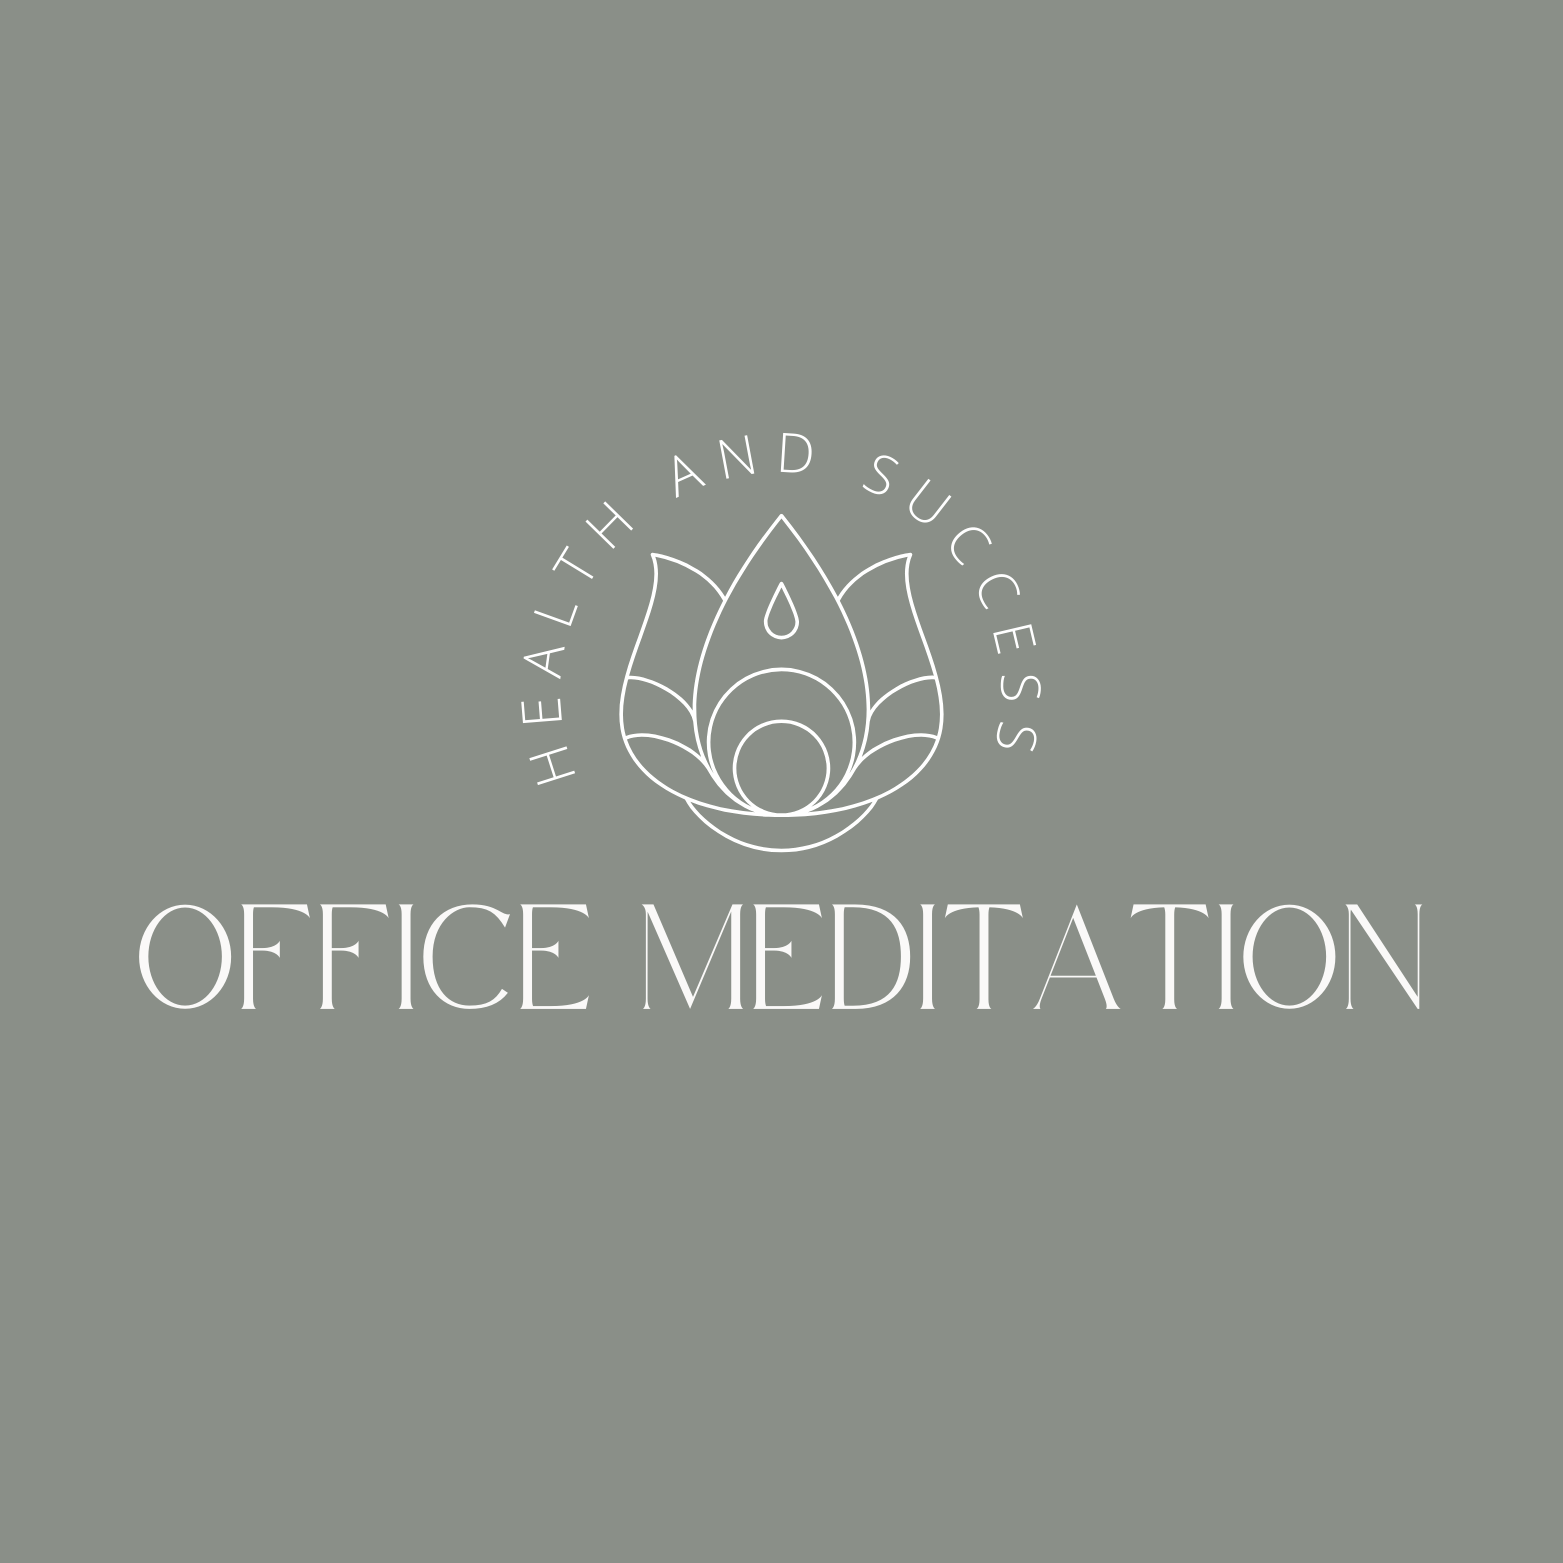 Office Meditation